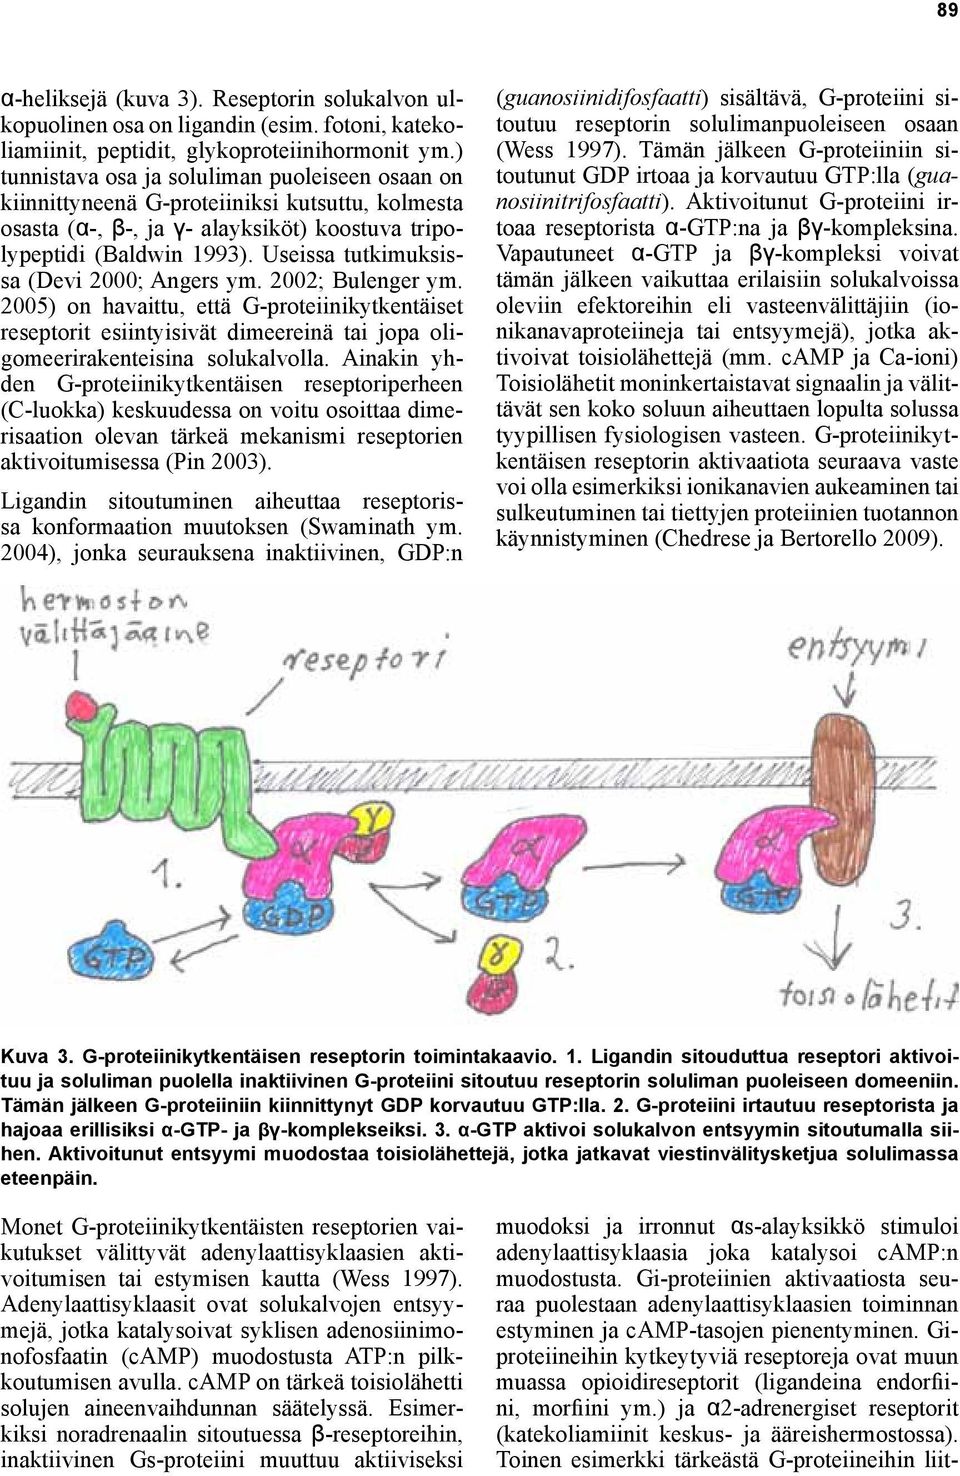 Useissa tutkimuksissa (Devi 2000; Angers ym. 2002; Bulenger ym. 2005) on havaittu, että G-proteiinikytkentäiset reseptorit esiintyisivät dimeereinä tai jopa oligomeerirakenteisina solukalvolla.